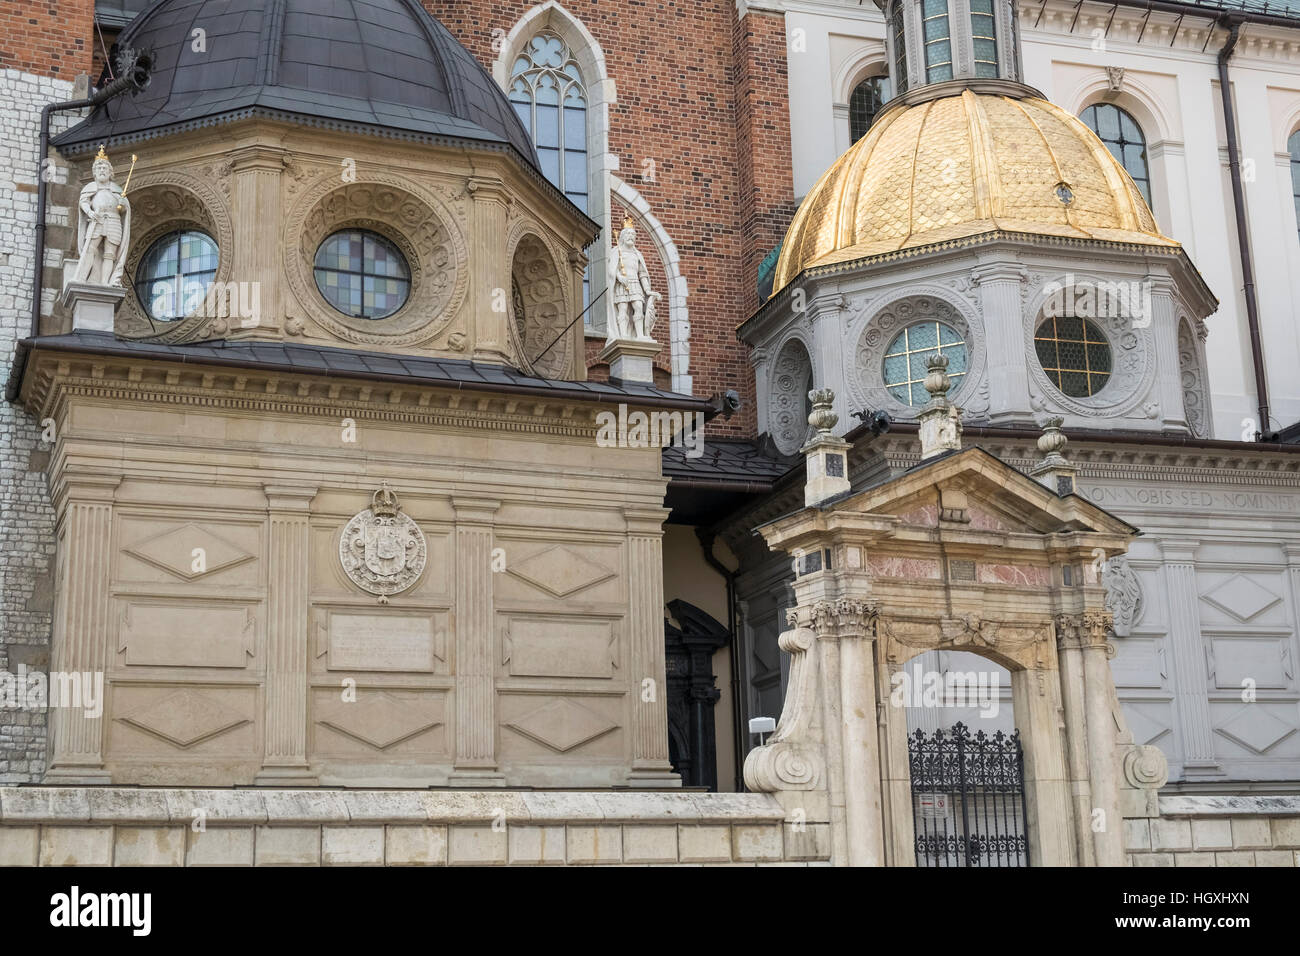 Esterno dettagli architettonici della cattedrale di Wawel, una chiesa cattolica romana situata sul colle di Wawel, Cracovia in Polonia Foto Stock